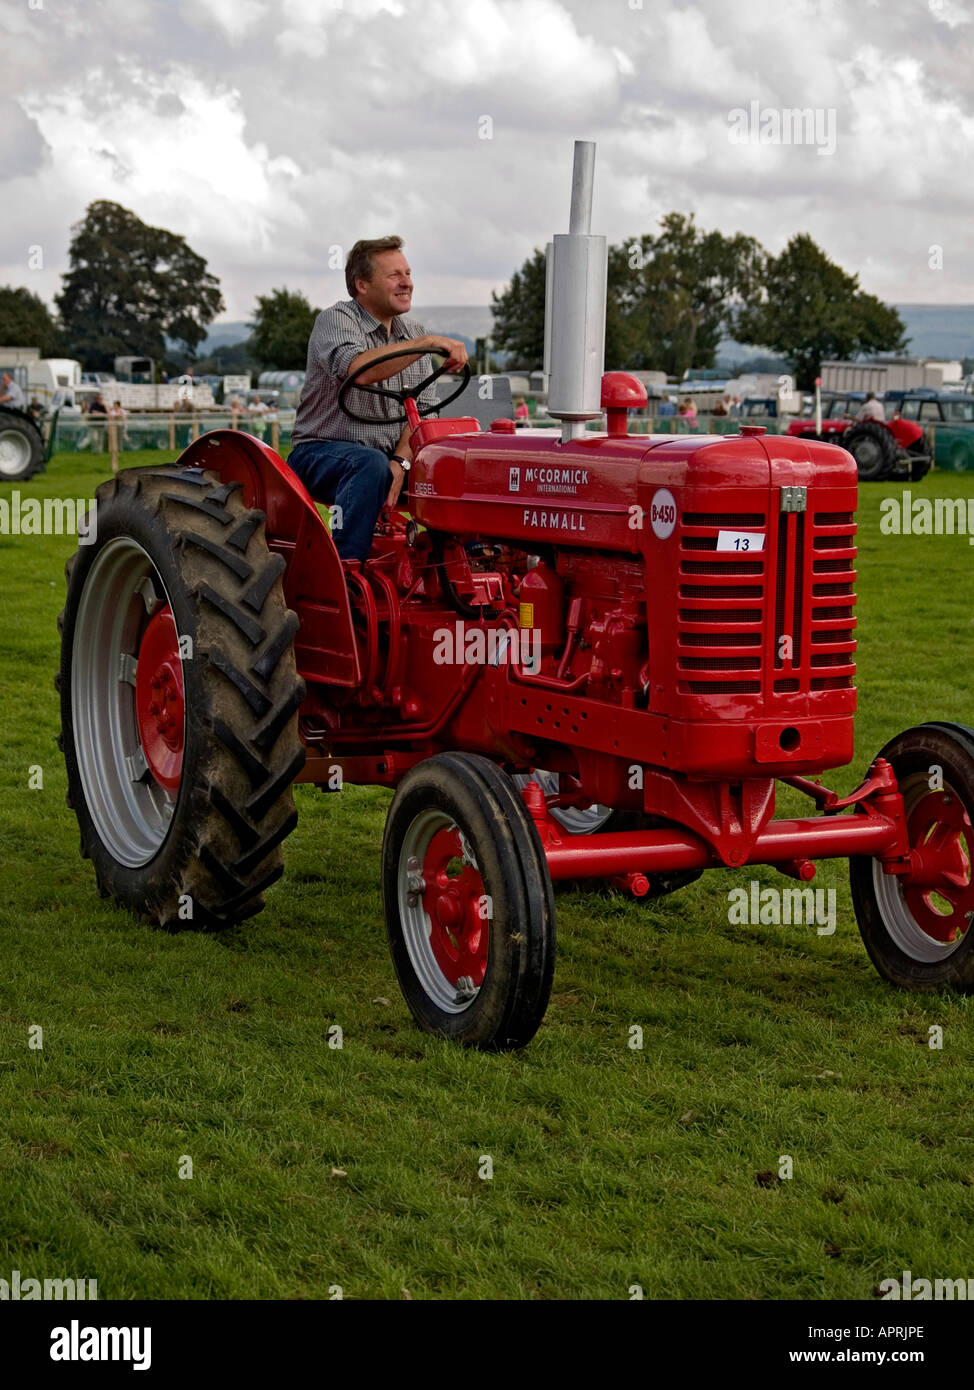 B450 un tracteur vintage, au salon de l'agriculture, 2006 Shérif devient. Banque D'Images